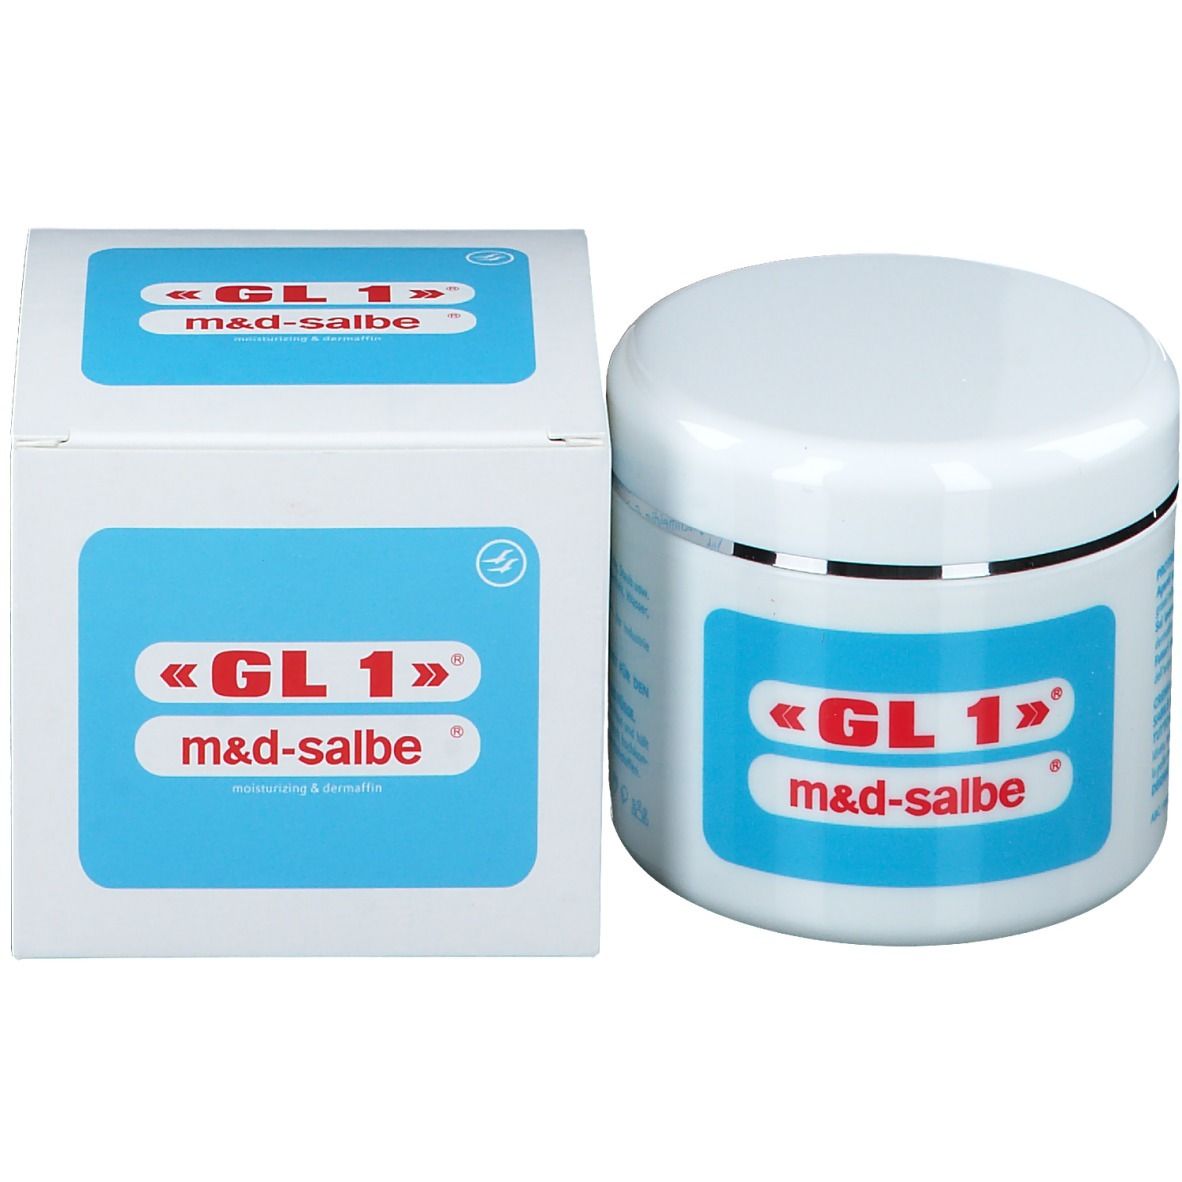 GL 1® m&d-Salbe®